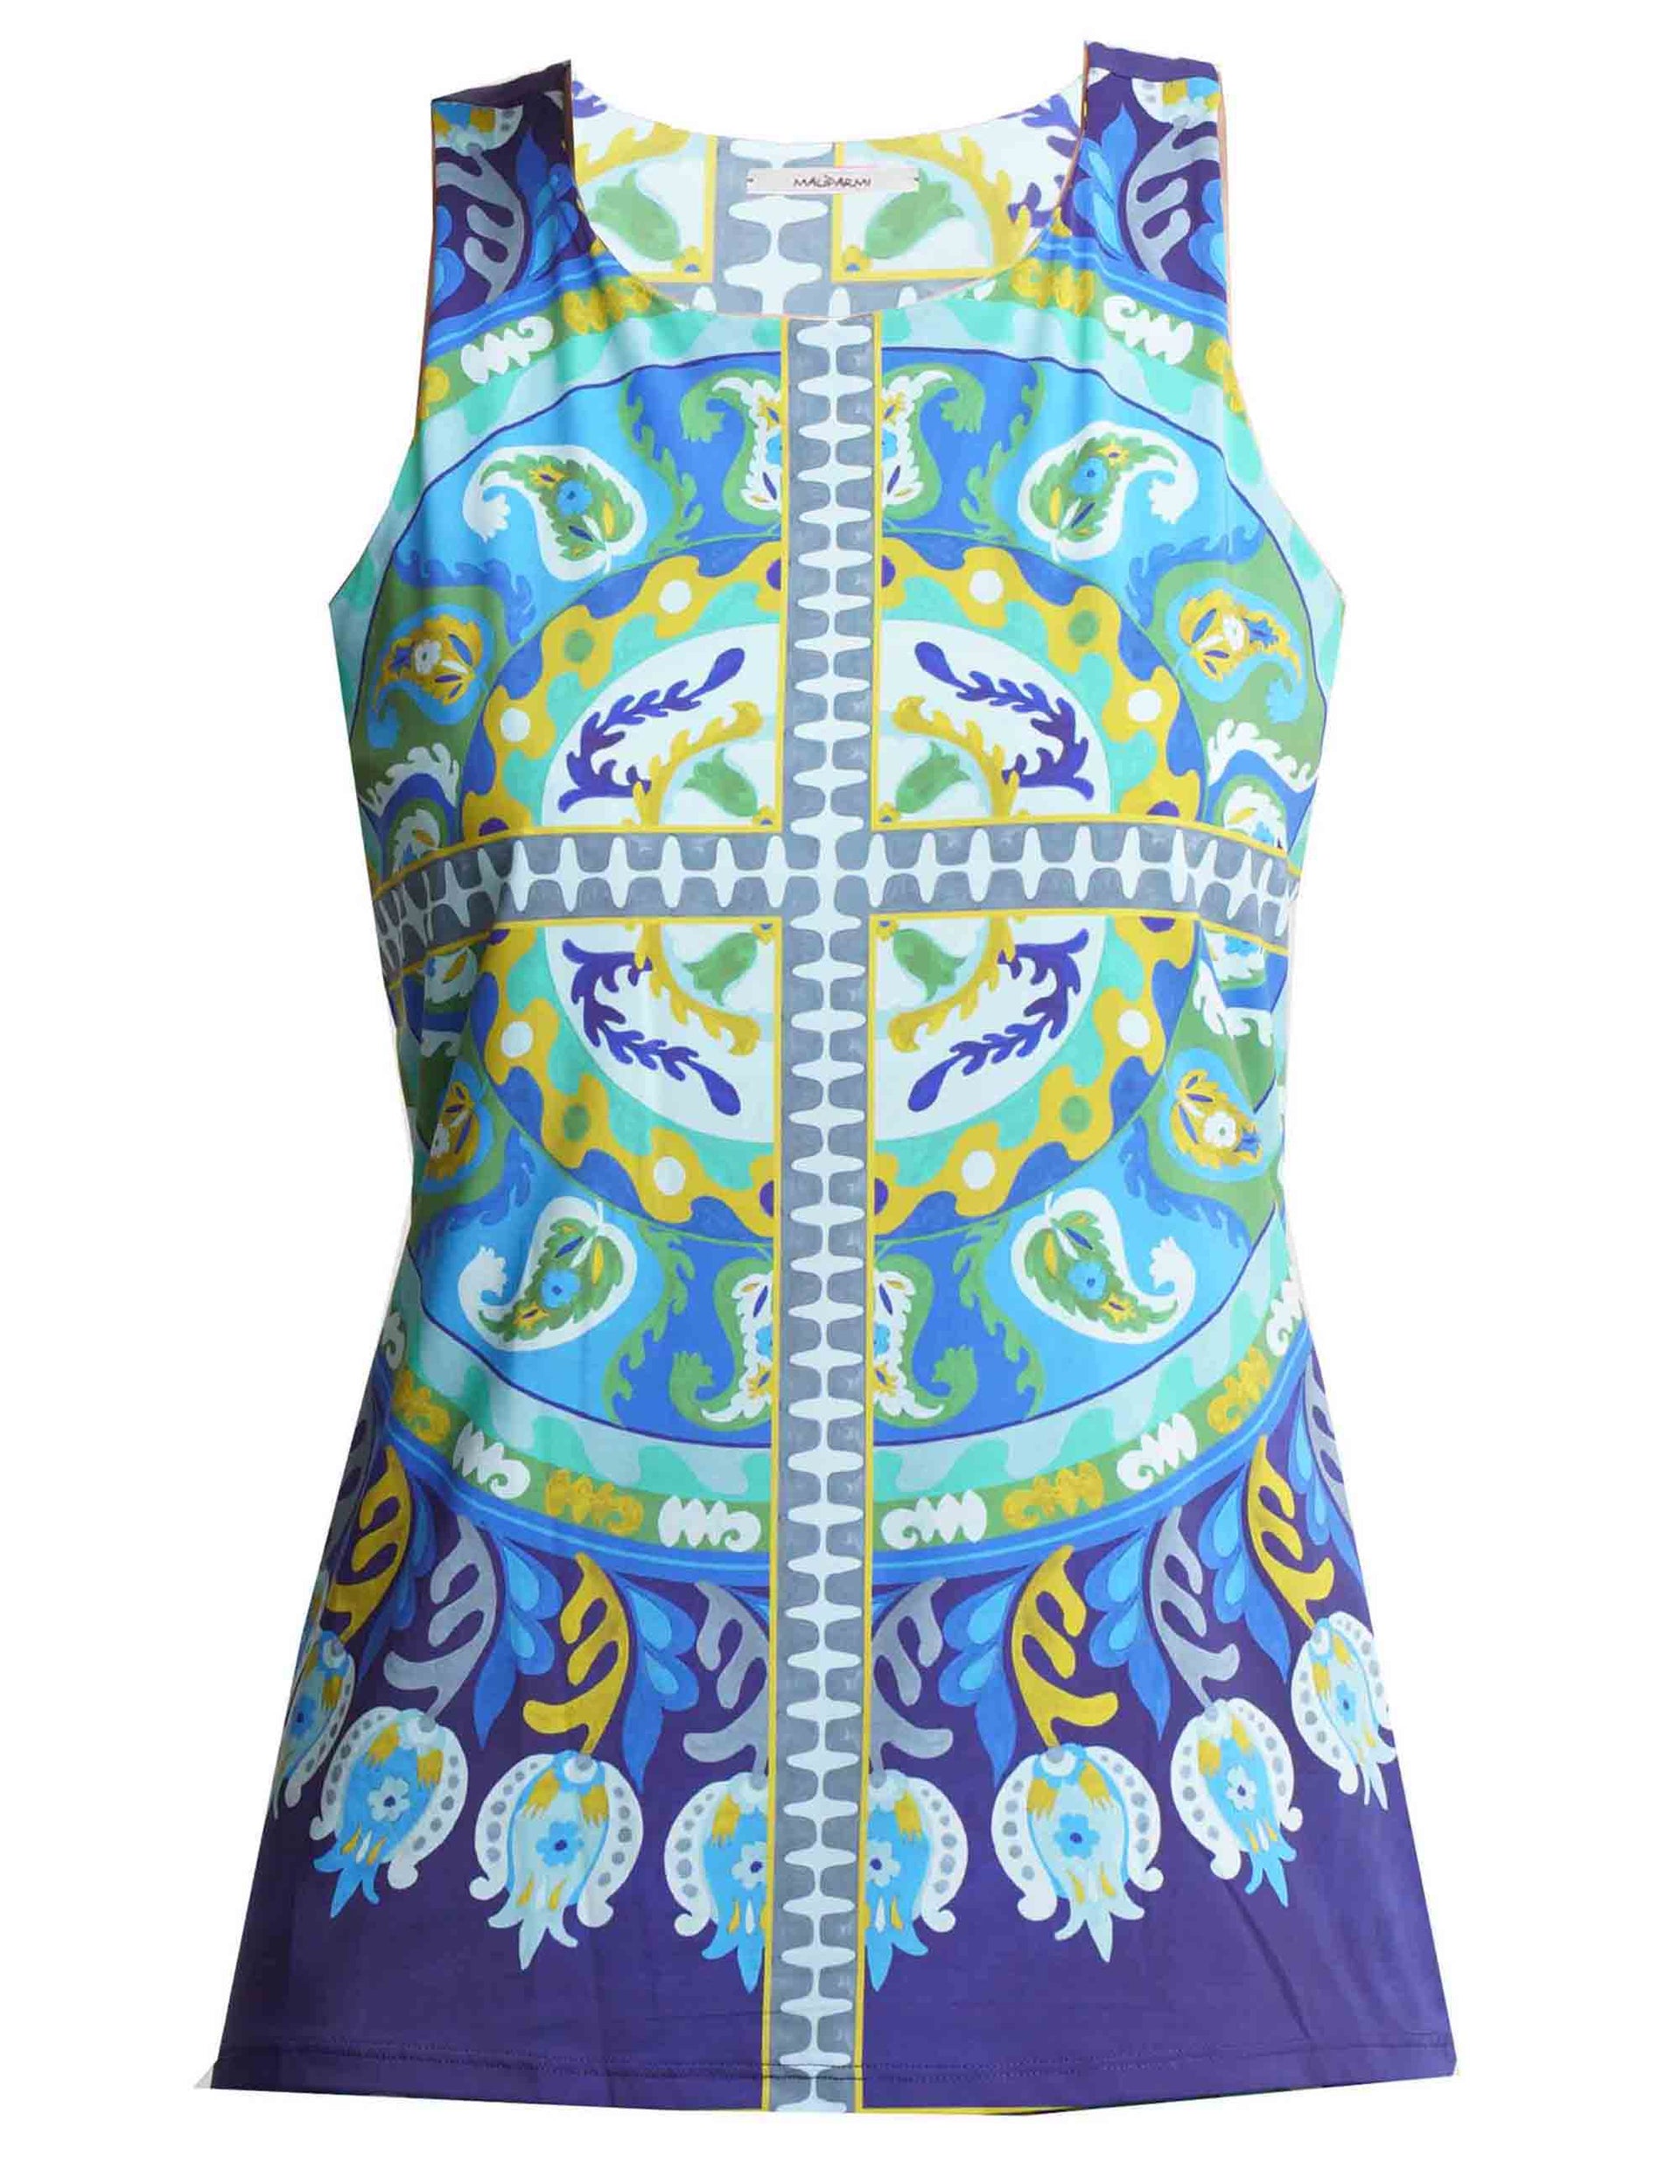 Suzani Crown women's top in patterned ultralight blue jersey